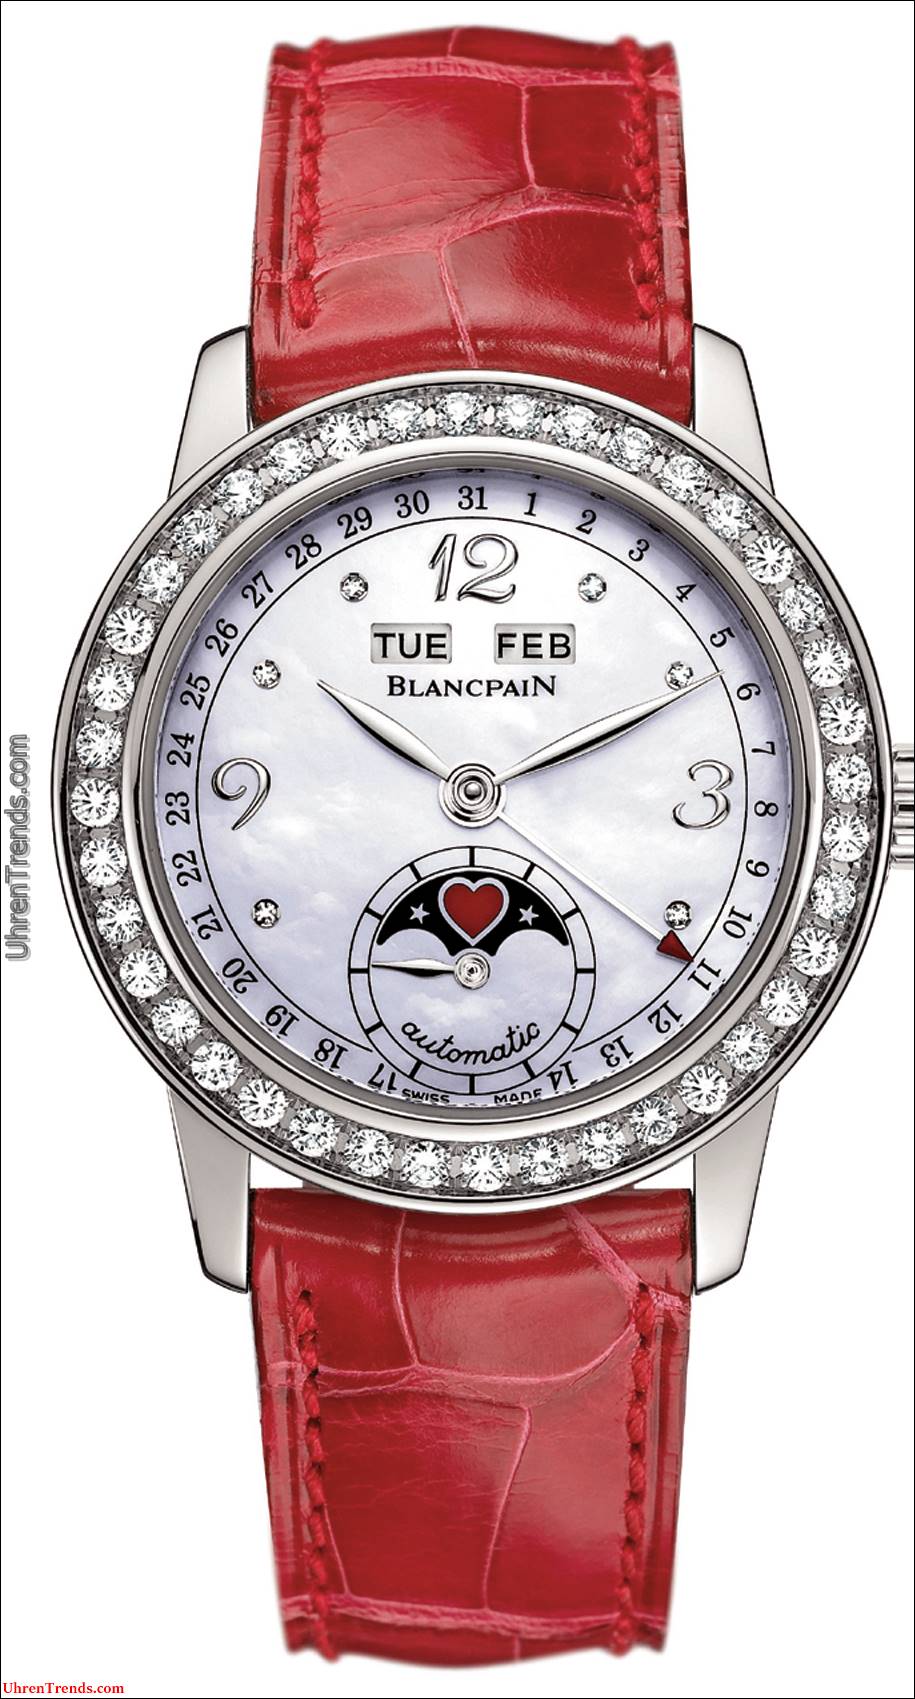 Blancpain St. Valentin Special Edition Uhr für die Damen in Ihrem Leben  